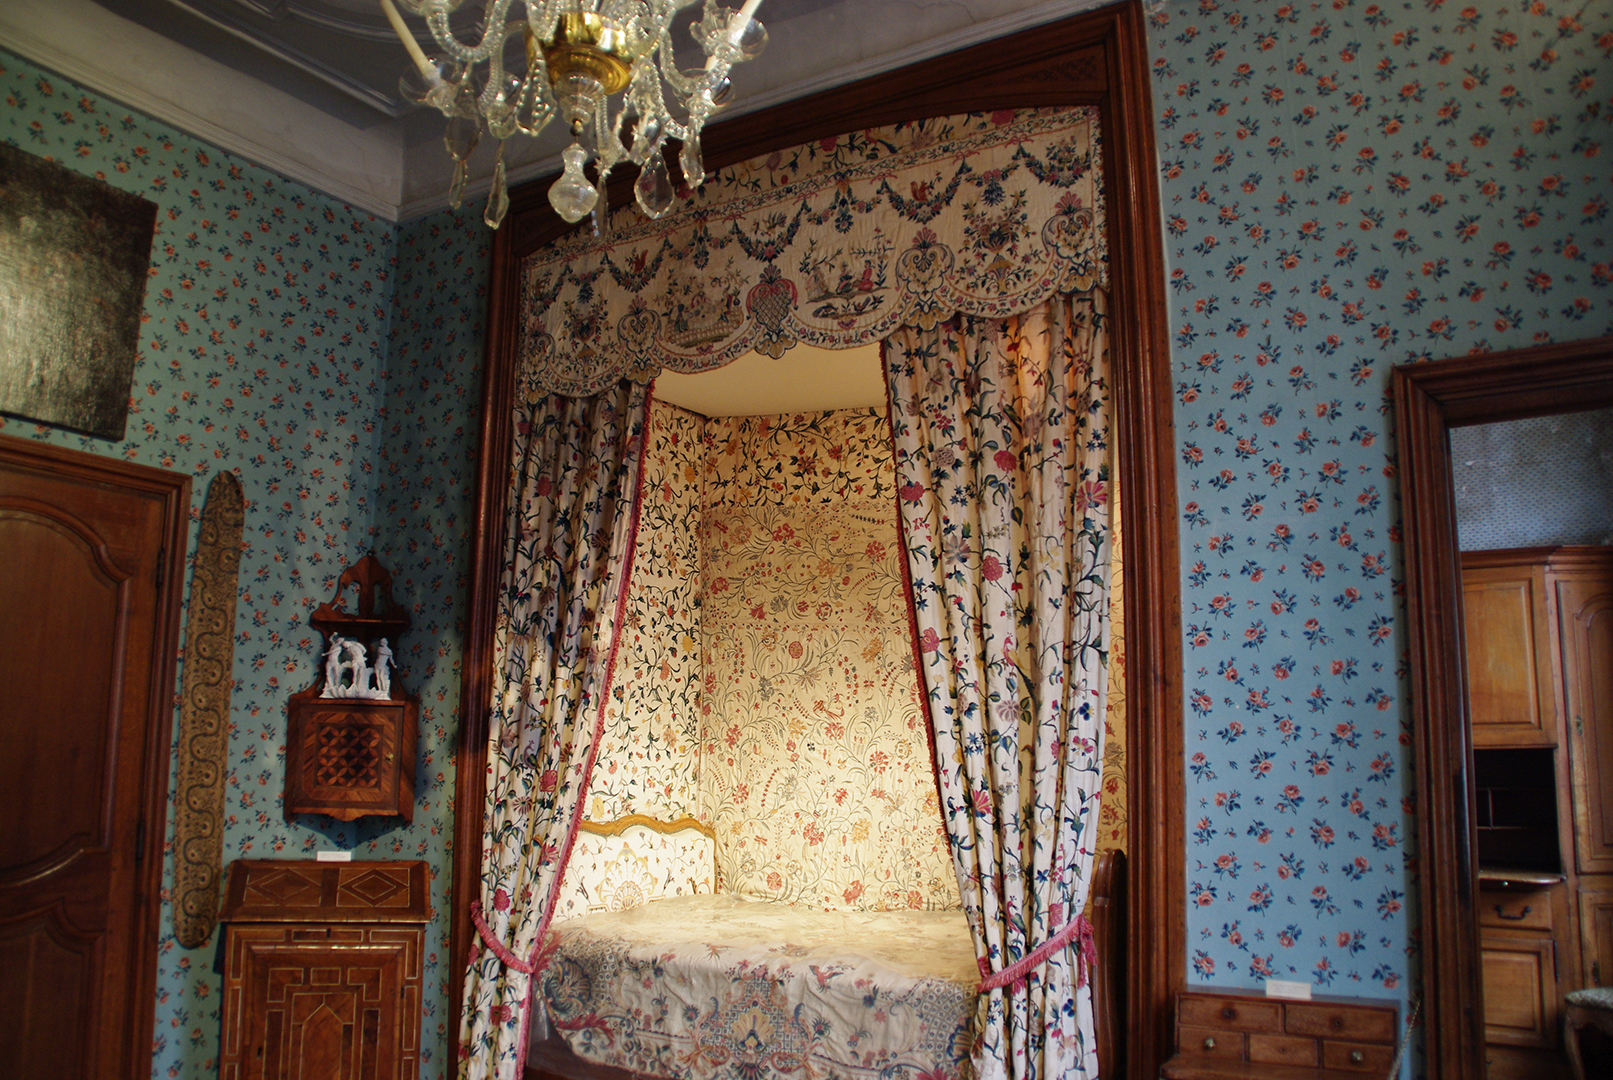 Les tissus brodés de la chambre de la Marquise, par Mme Chantal Carpentier.